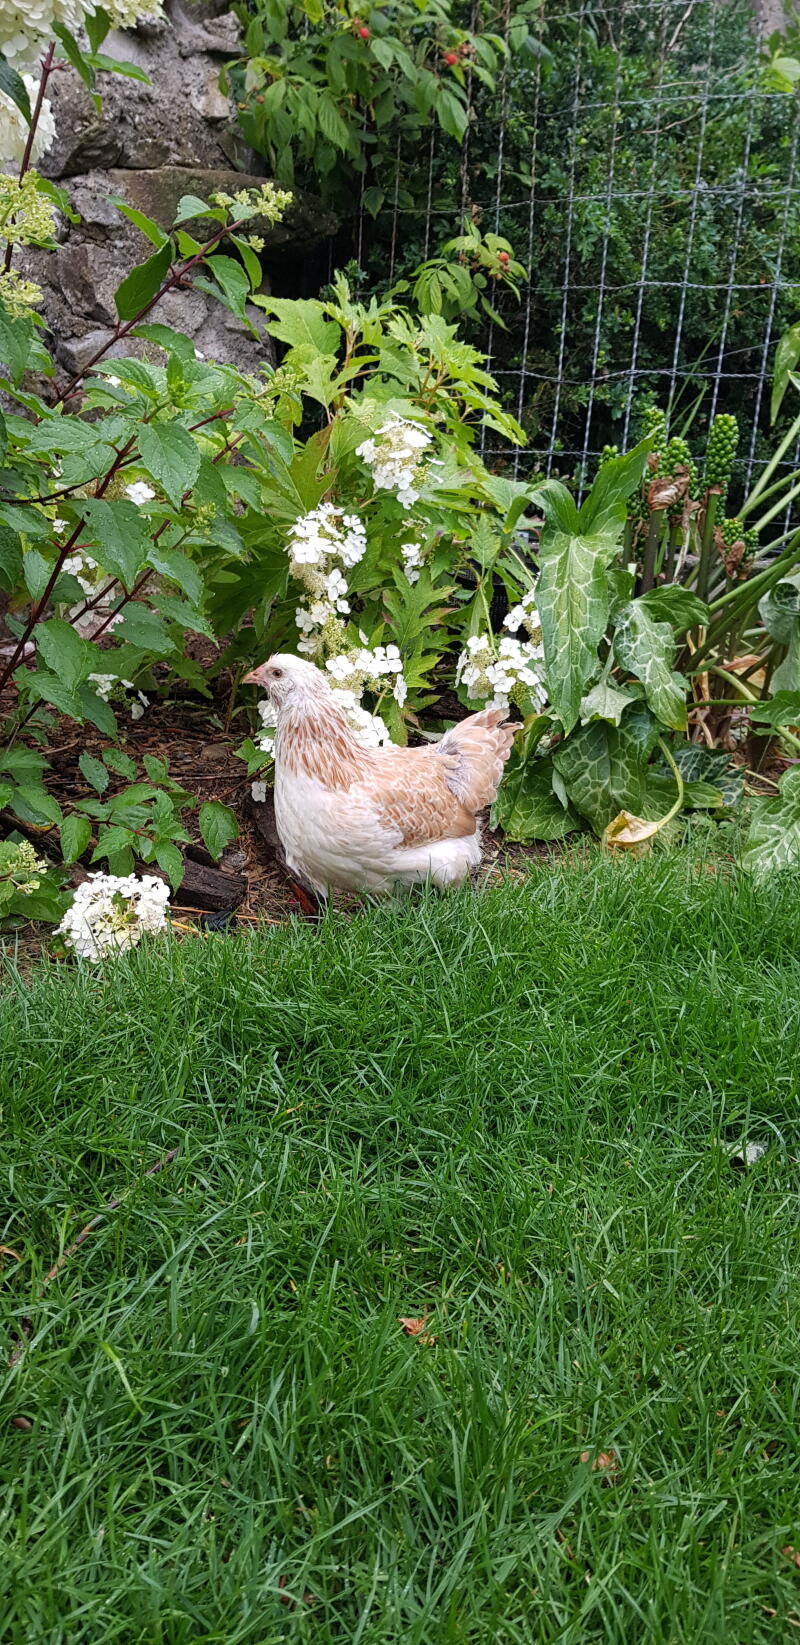 Una gallina blanca y marrón en un jardín detrás de una red